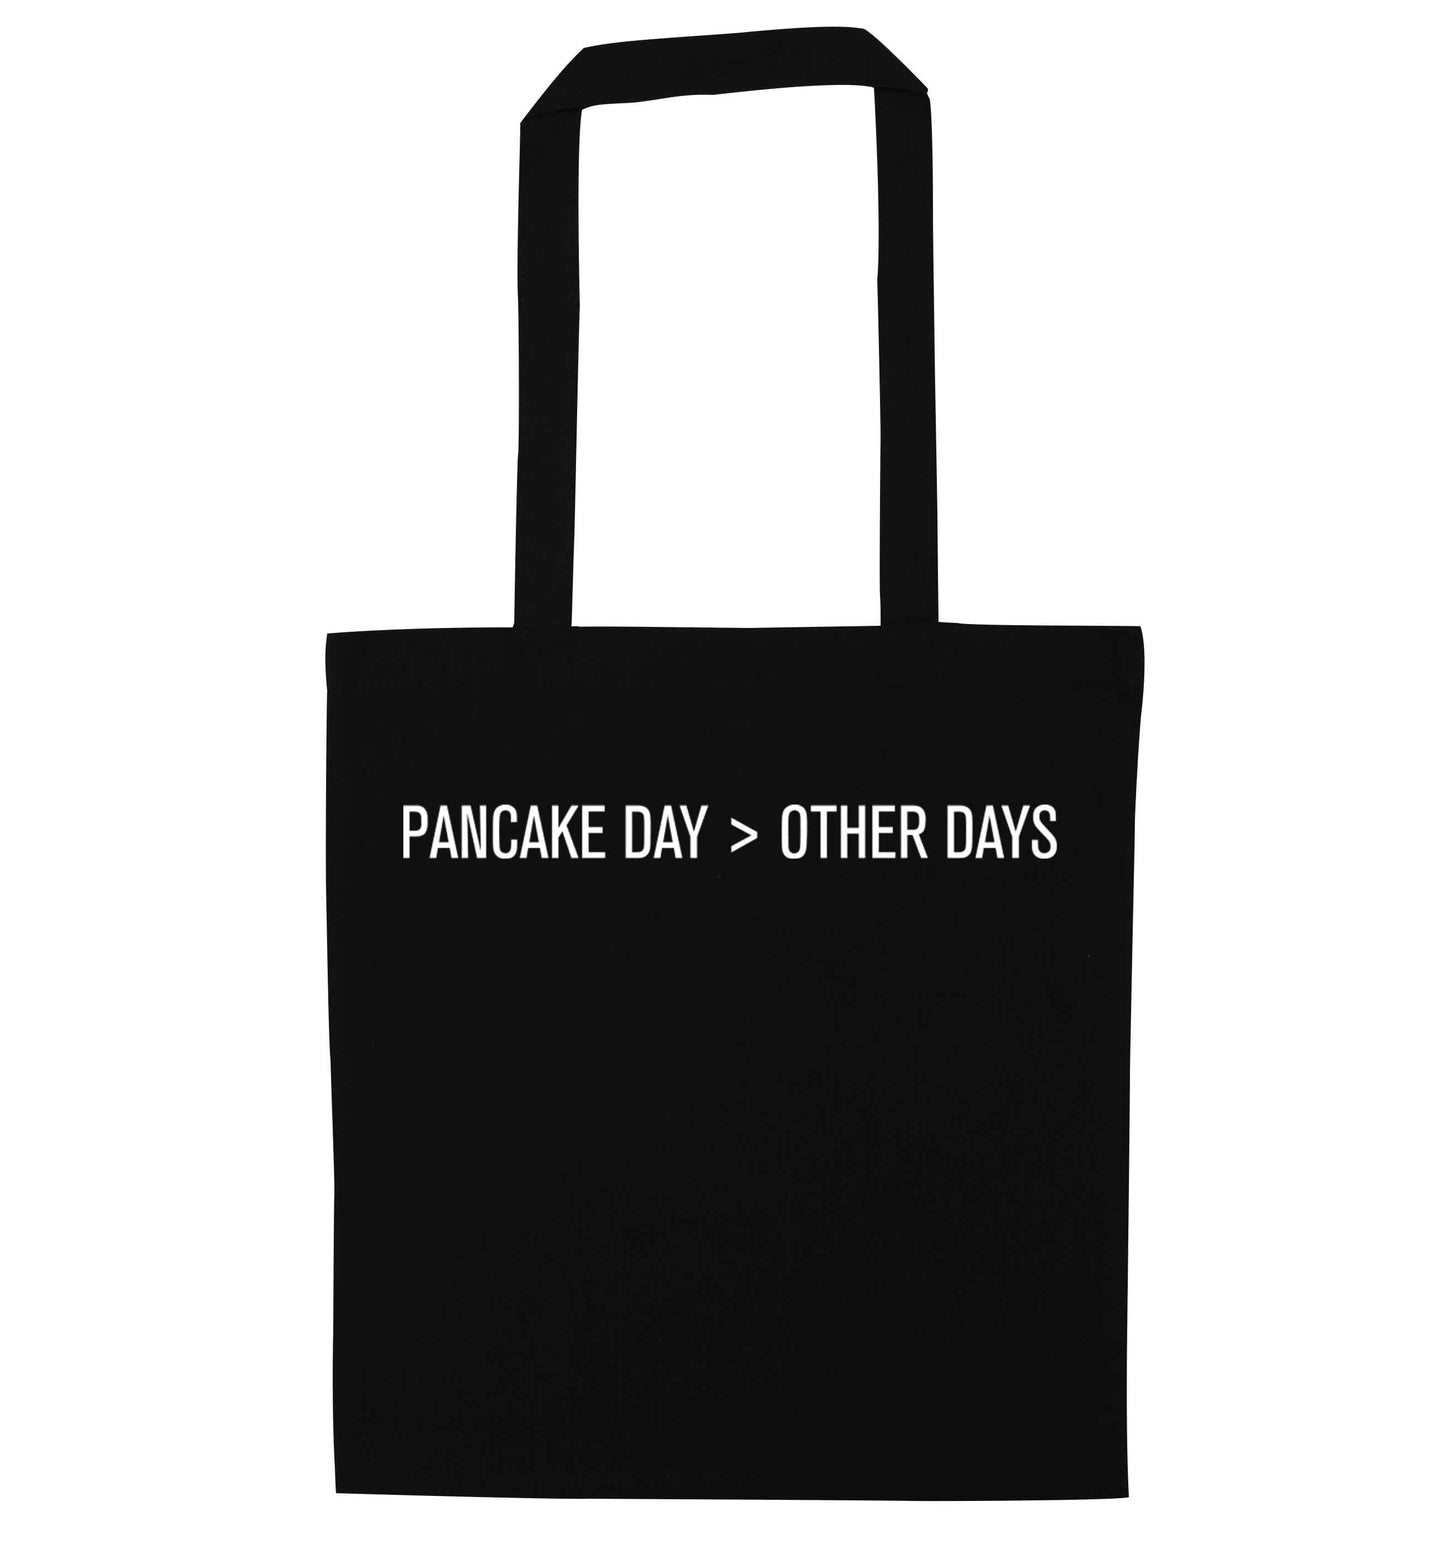 Pancake day > other days black tote bag